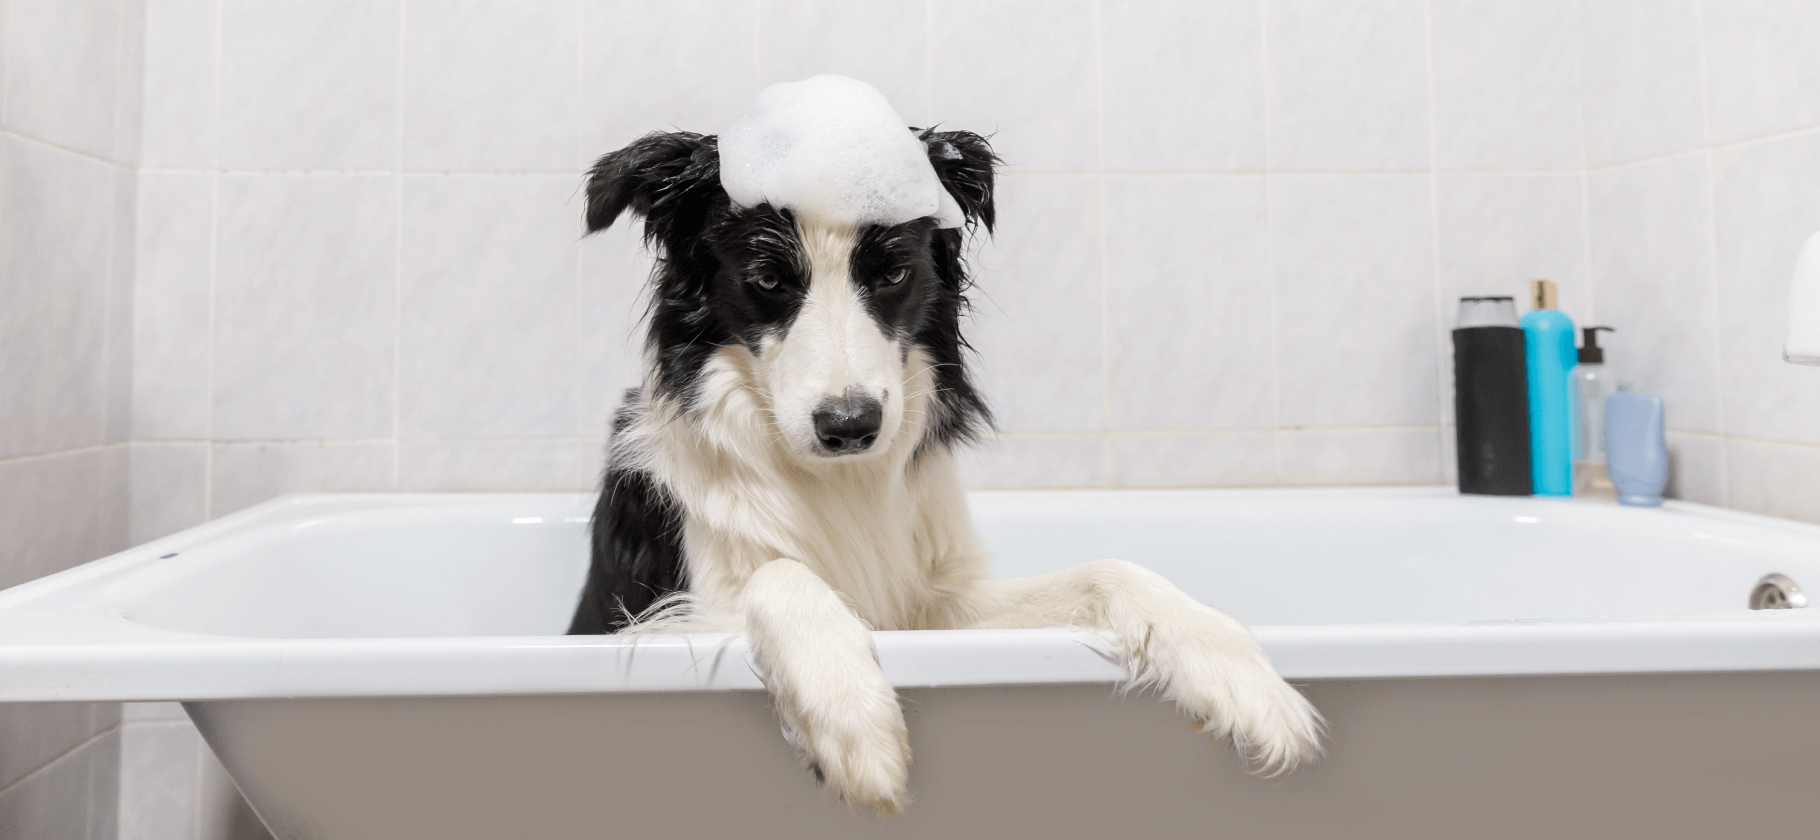 Как часто мыть питомца, водить его к врачу и грумеру: 12 базовых правил ухода за собакой